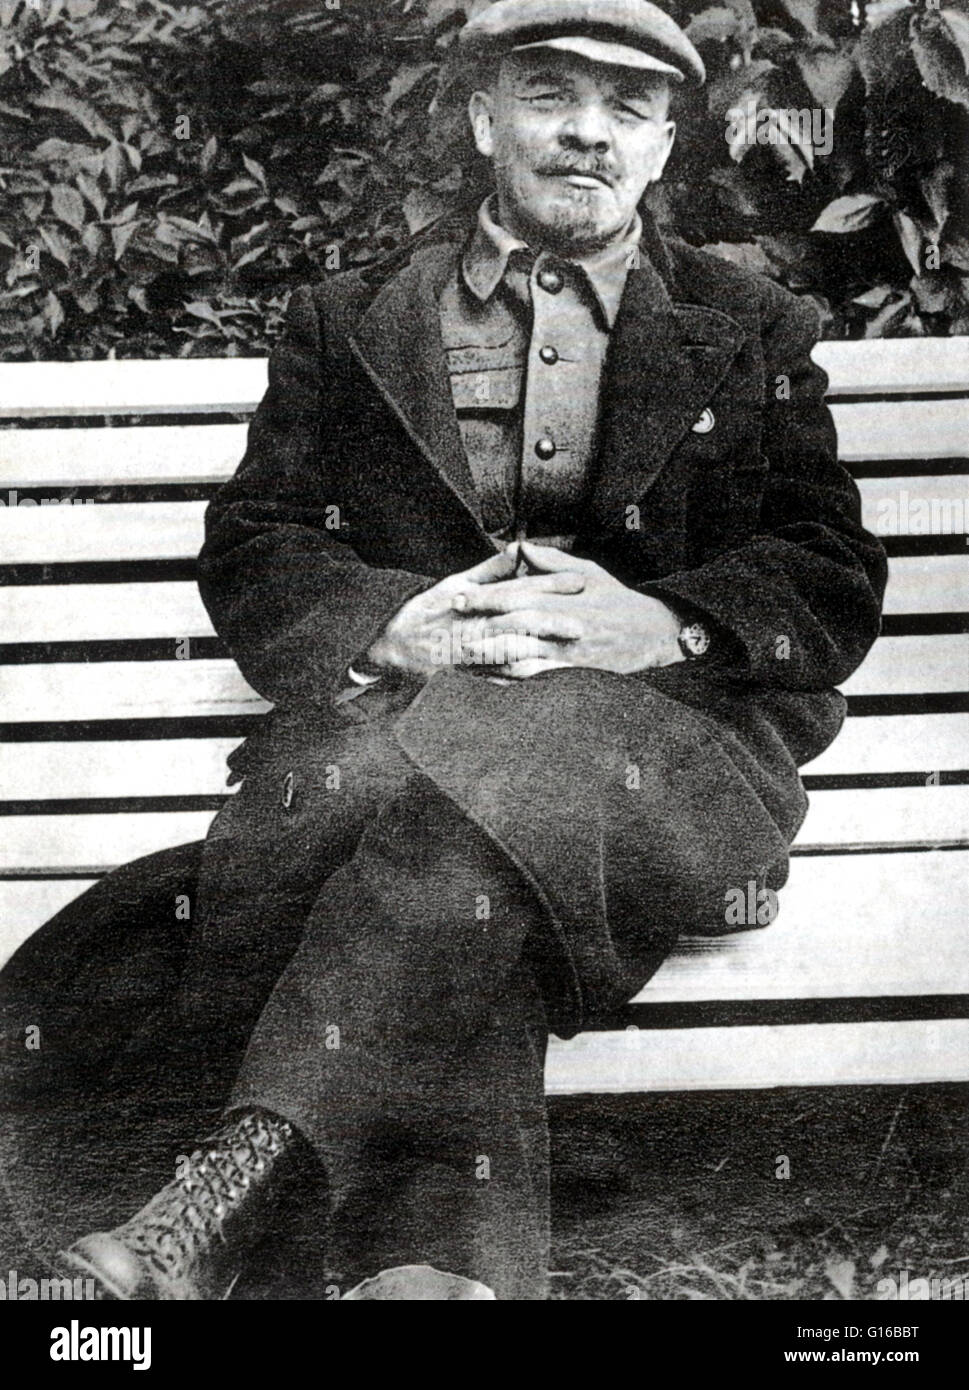 Lenin seduta su una panchina a Gorky, 1922. Vladimir Ilyich Lenin (Aprile 22, 1870 - 21 gennaio 1924) era un russo rivoluzionario marxista, comunista, statista russo e teorico marxista. Lenin è stato il primo premier dell'Unione Sovietica. In 1 Foto Stock